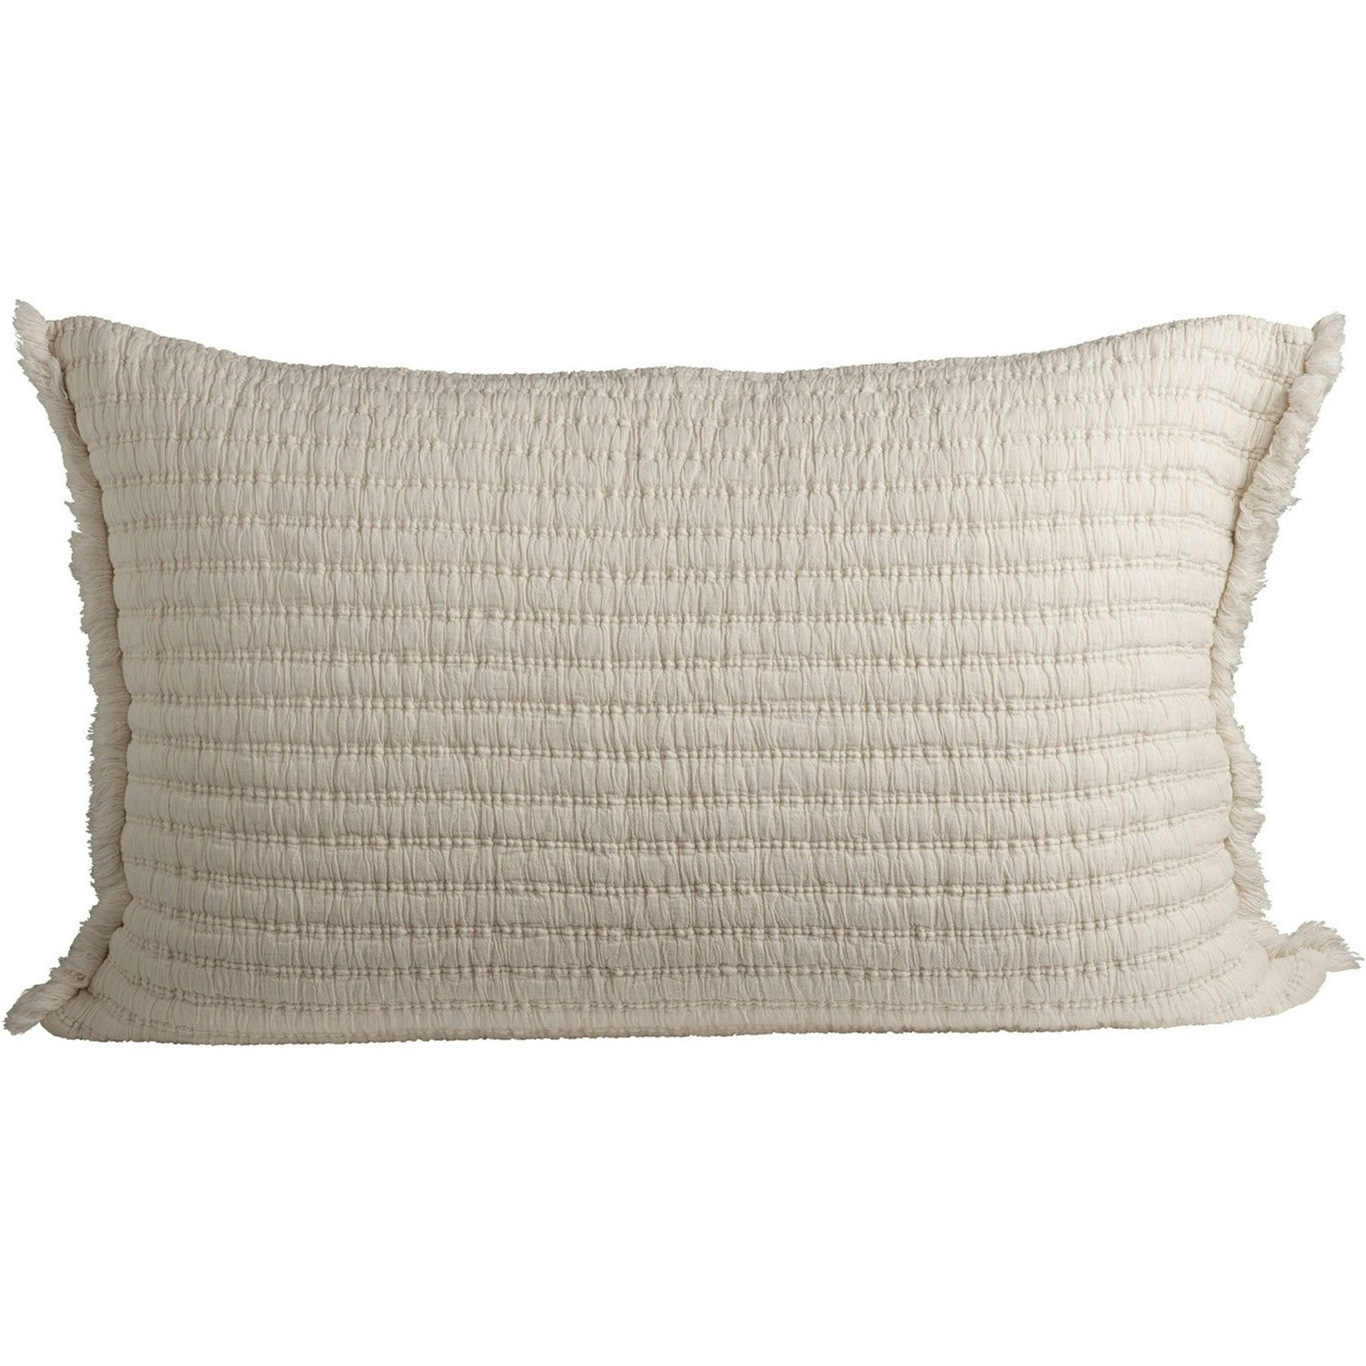 Everpearl Cushion Cover Cream, 50x75 cm